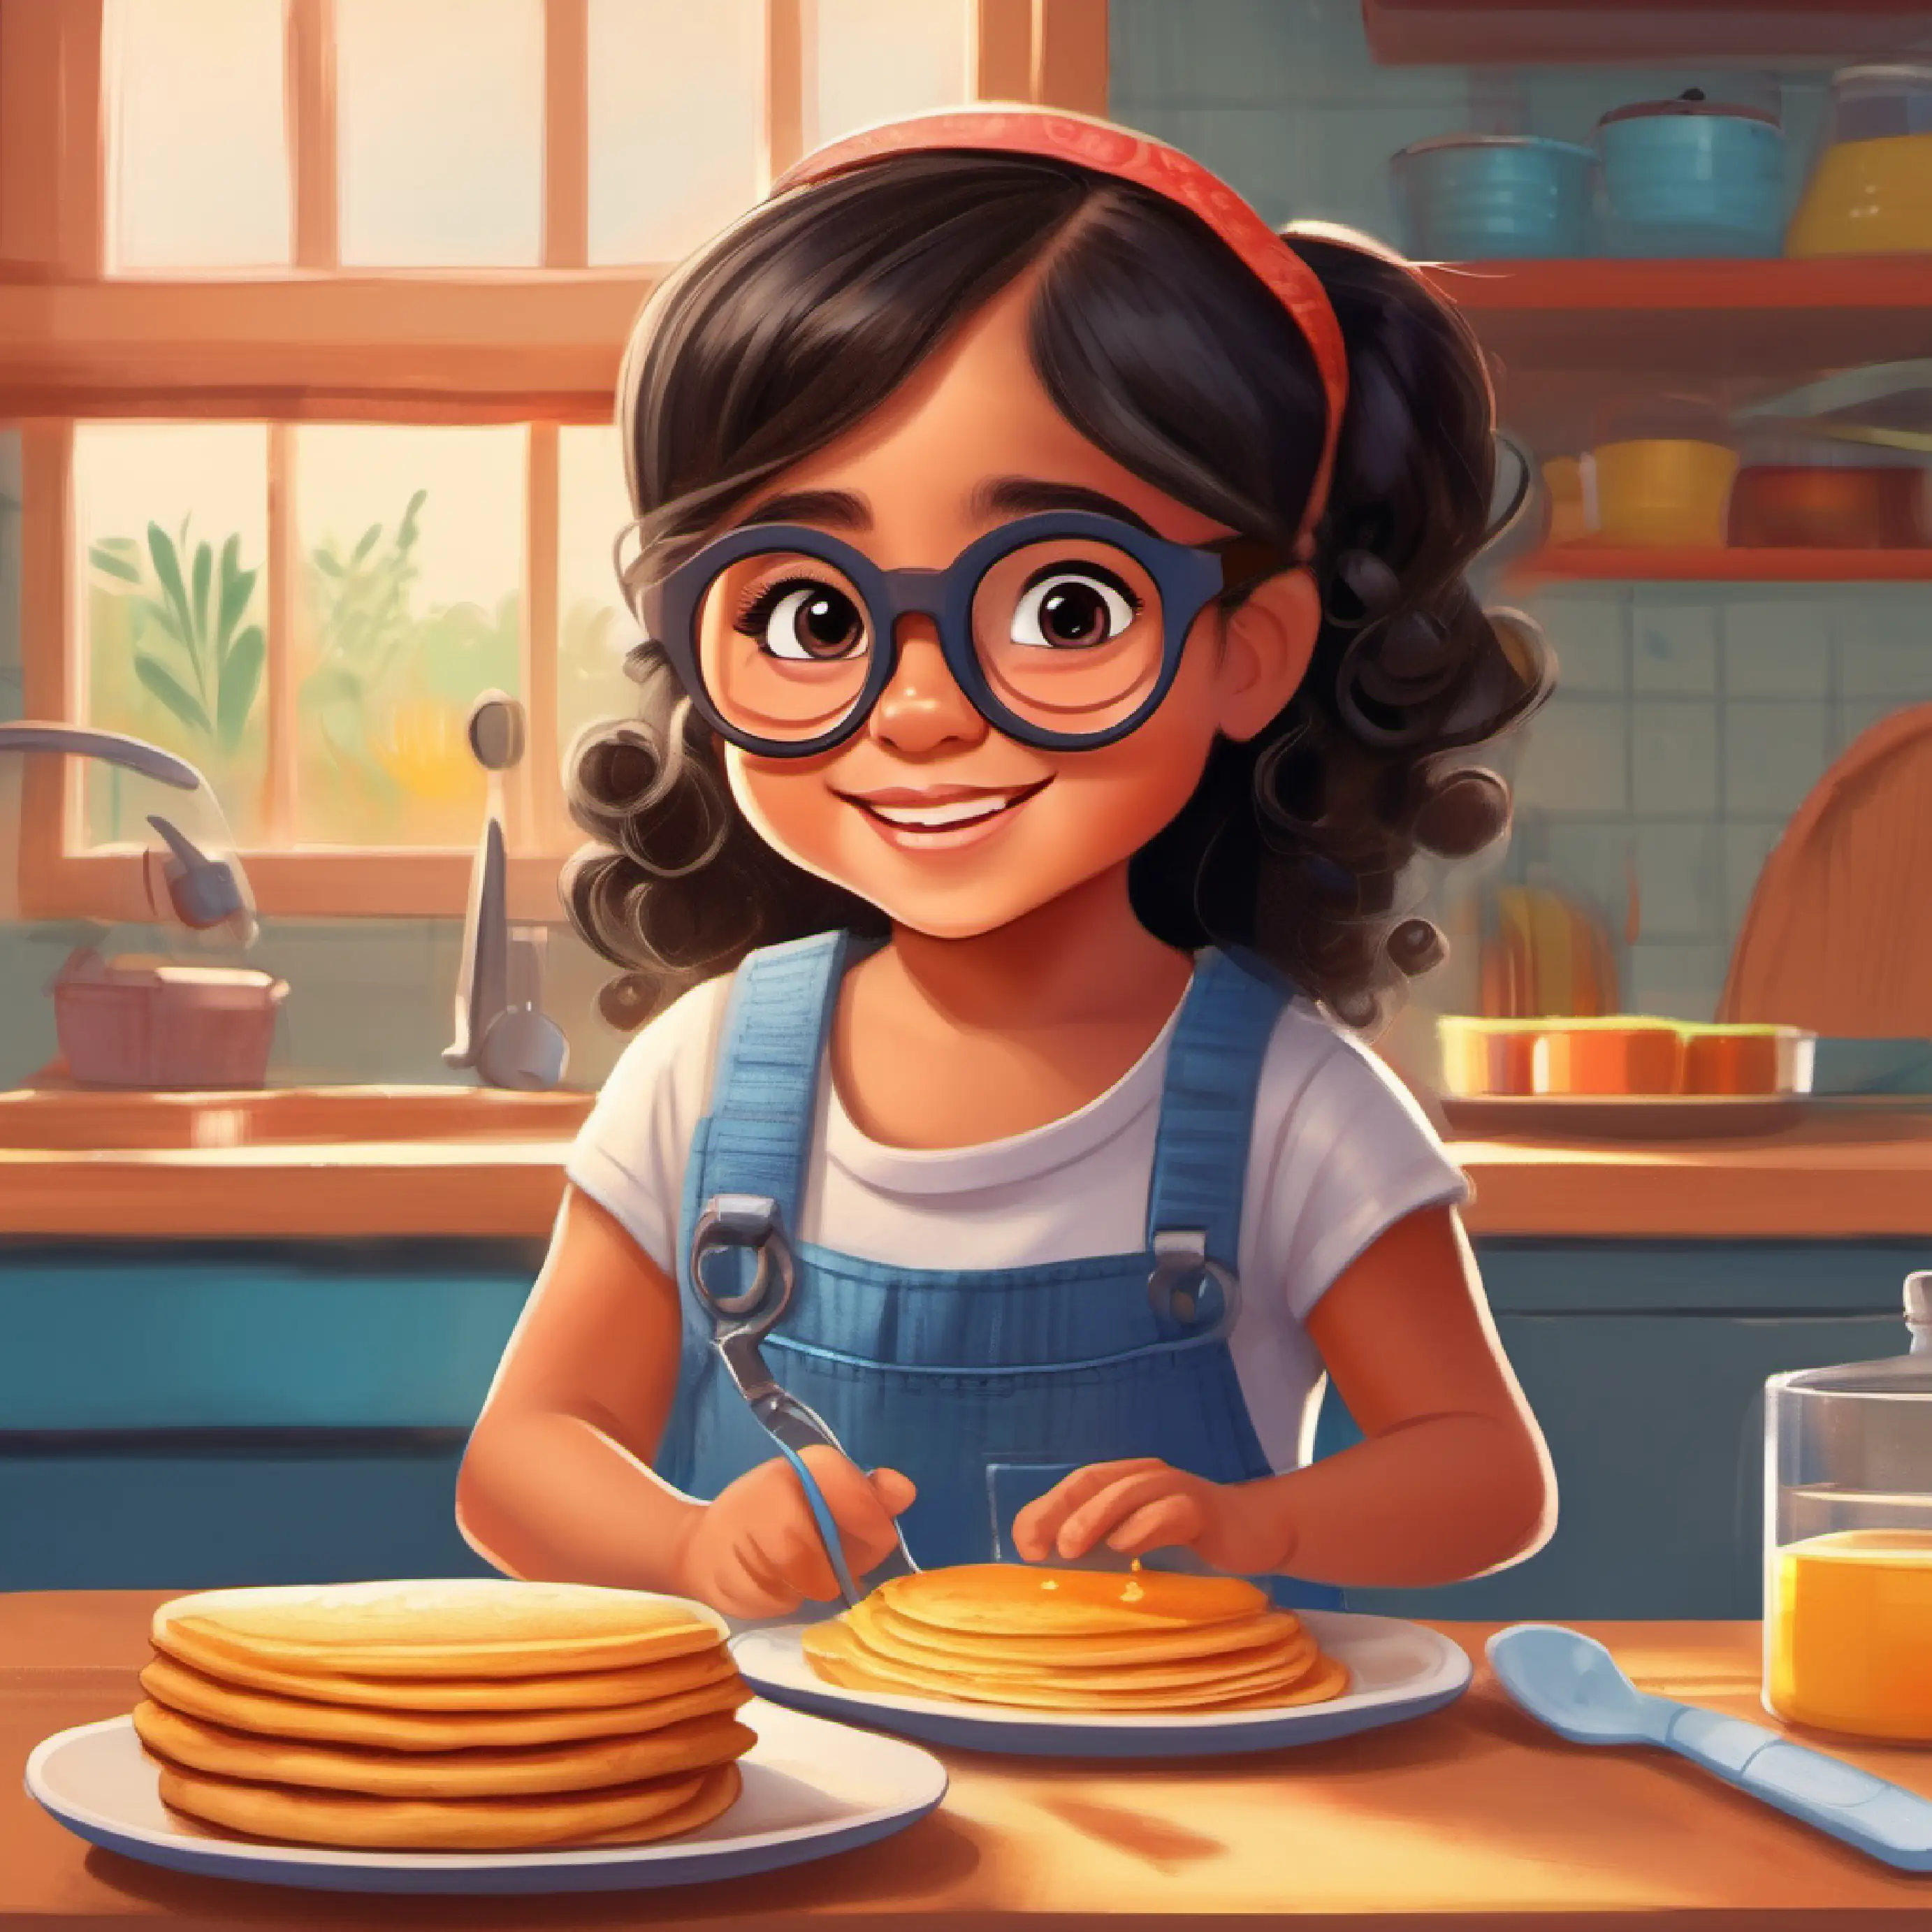 Karen helps her mom make pancakes for breakfast.